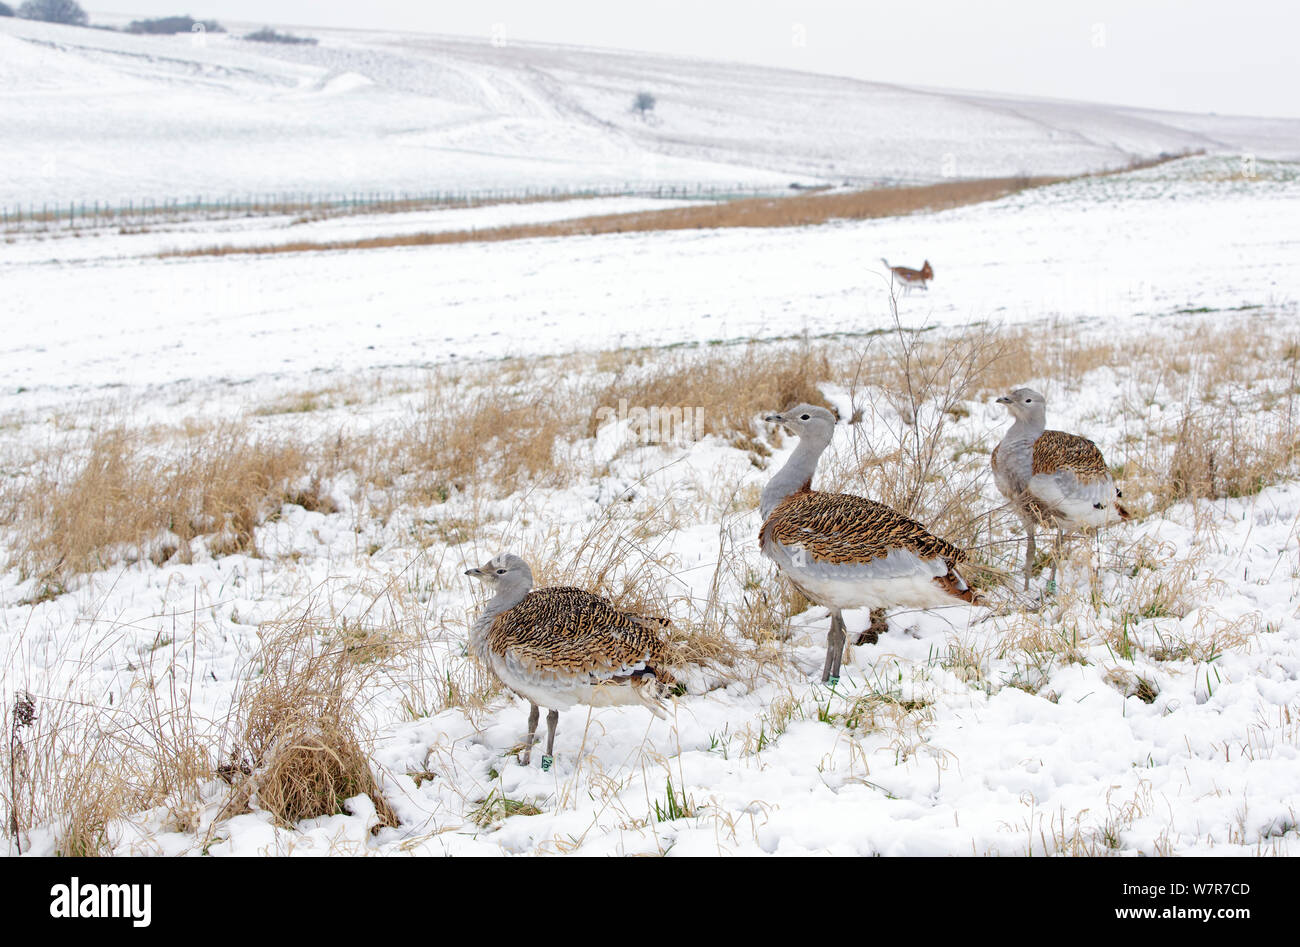 Große Trappen (Otis tarda) im Schnee auf Salisbury Plain, Teil einer Wiedereinführung Projekt mit Vögeln unter DEFRA Lizenz aus Russland importiert. Salisbury, Wiltshire, England. Januar. Stockfoto